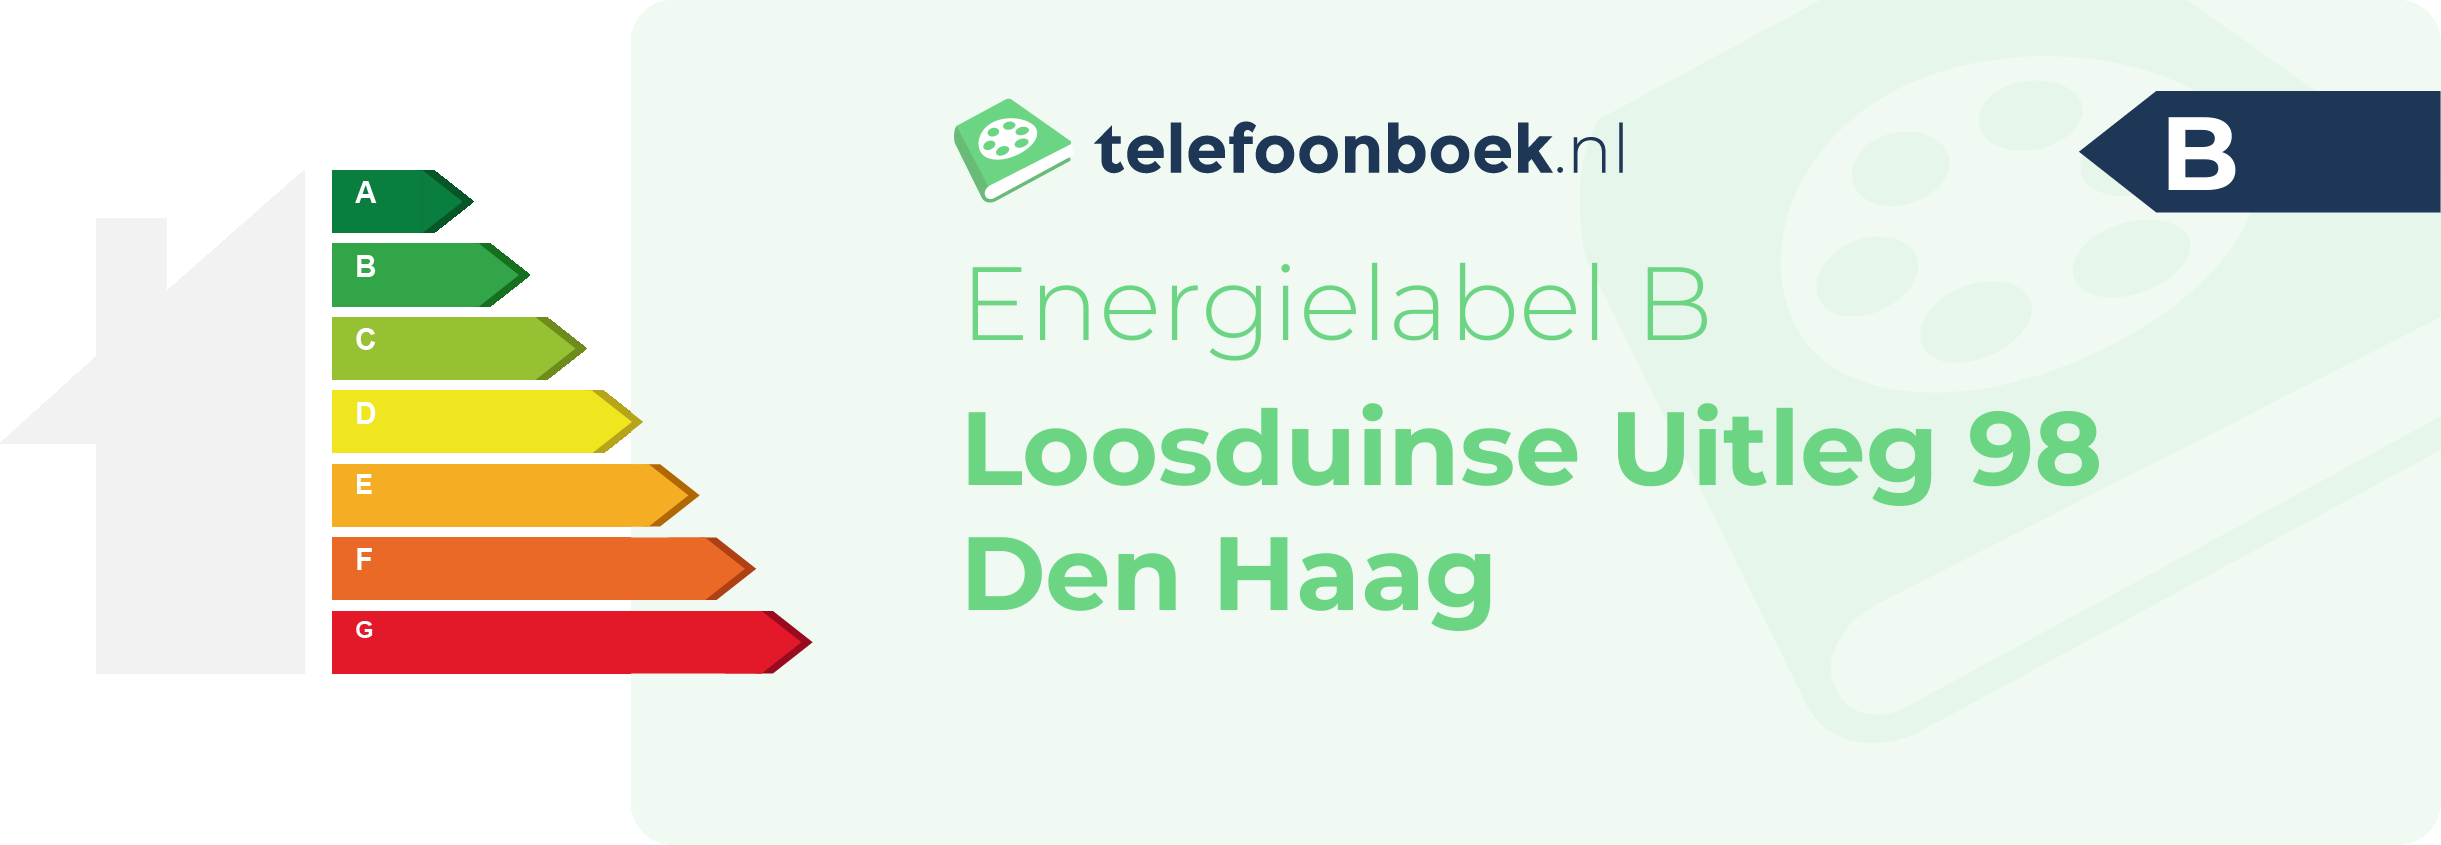 Energielabel Loosduinse Uitleg 98 Den Haag